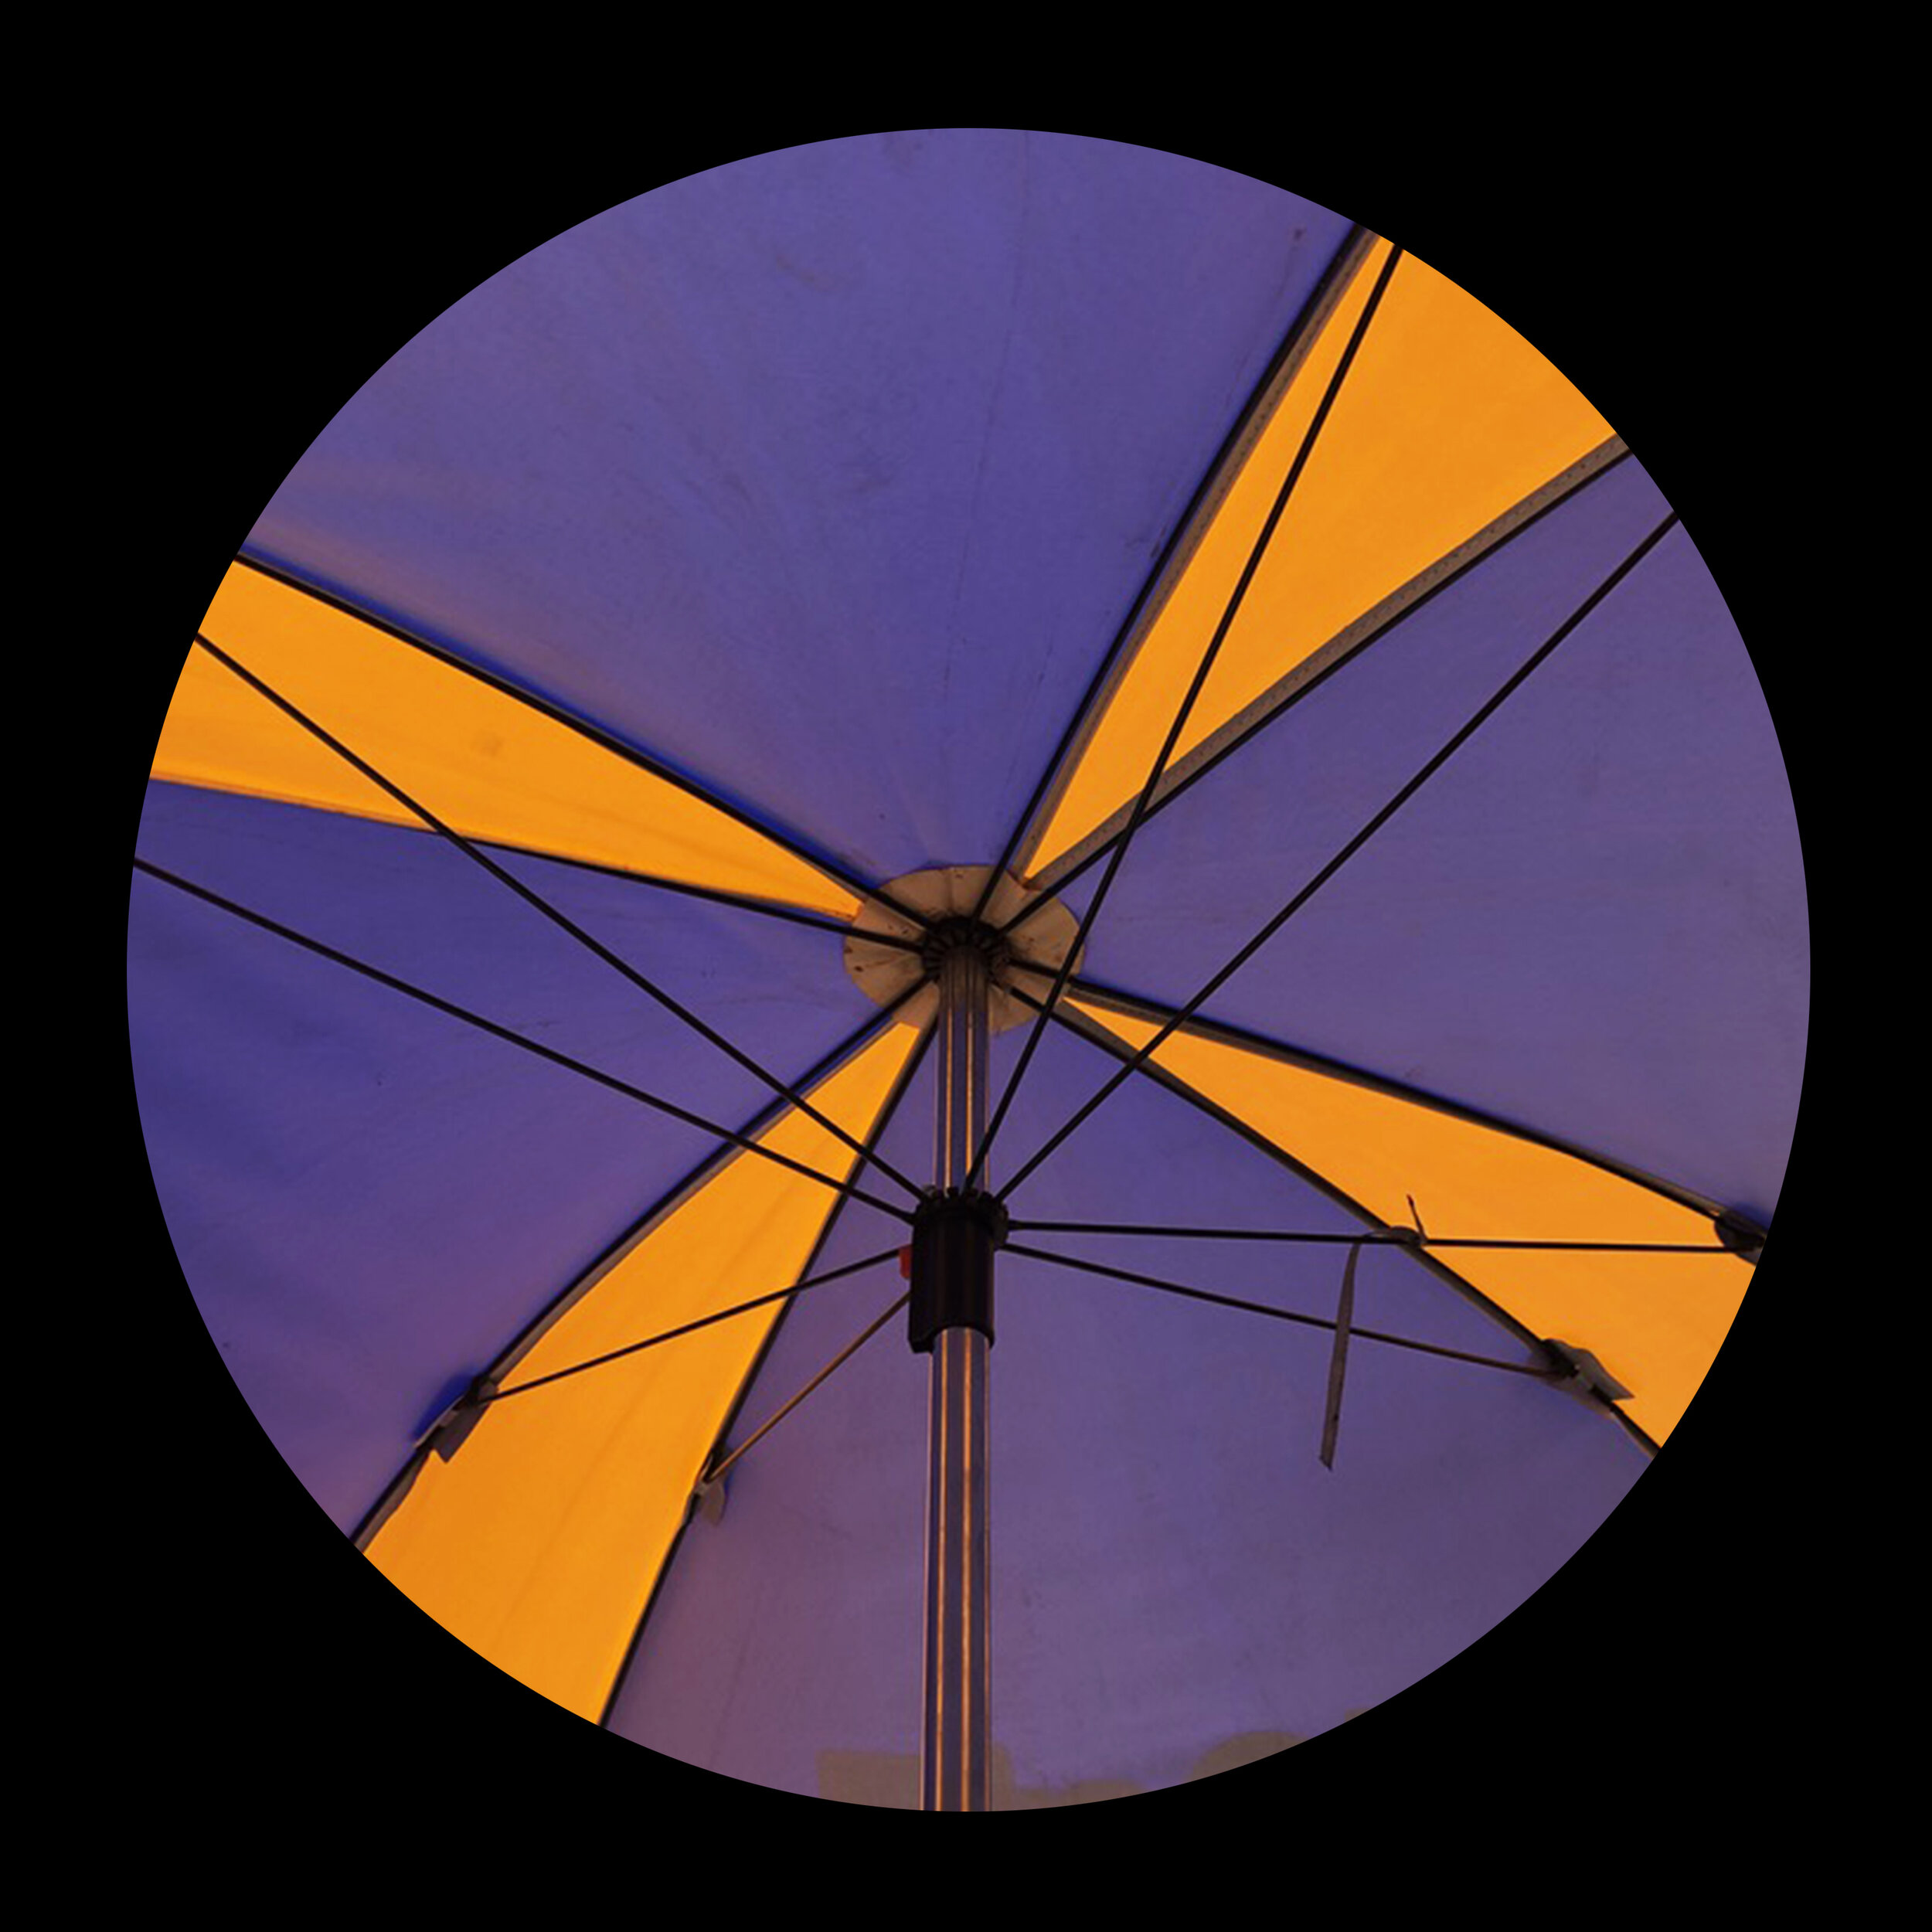 umbrellas_inner_14.jpg